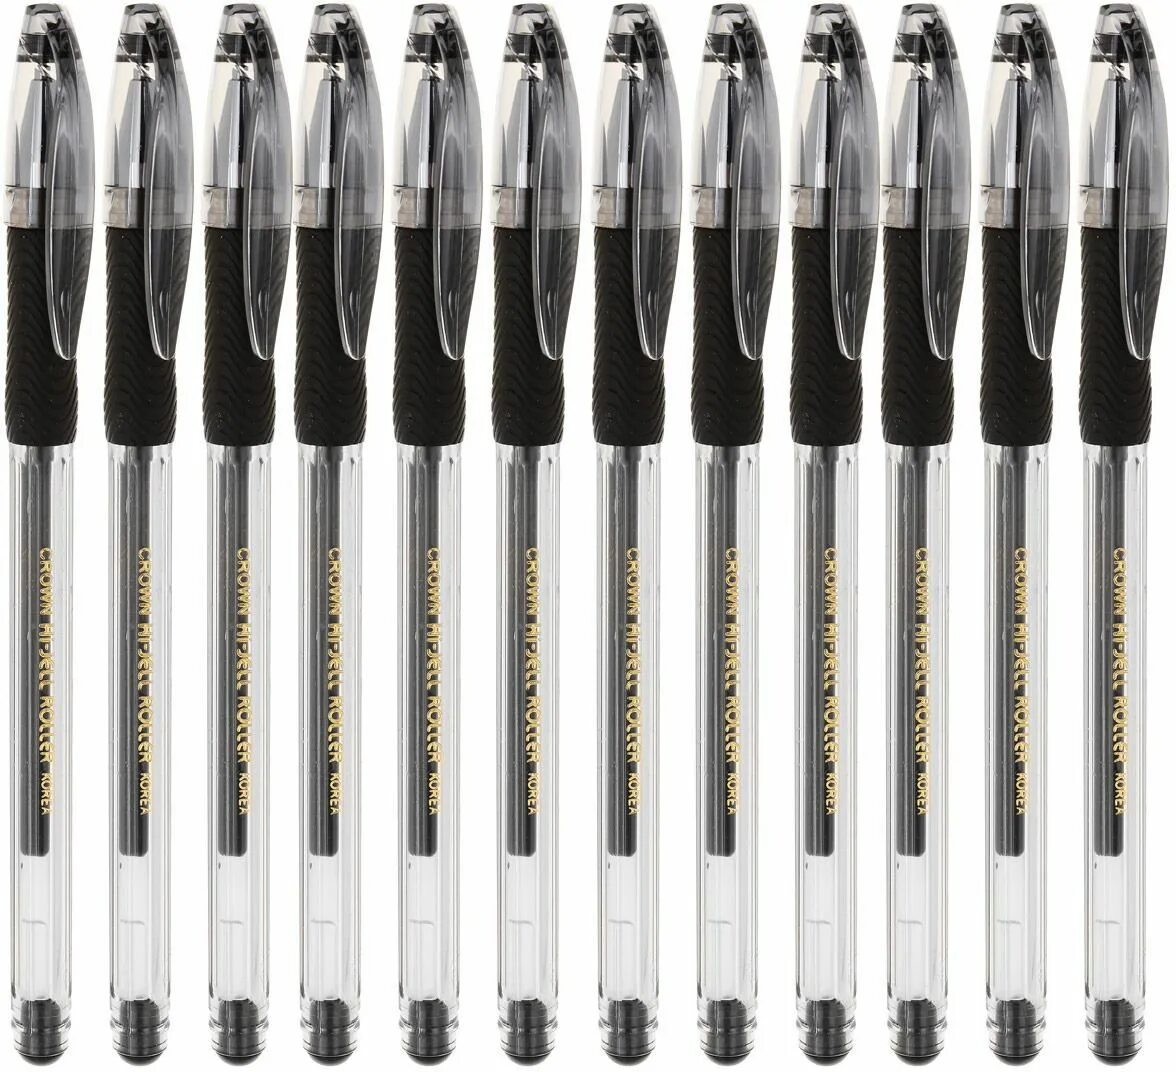 Черные гелевые ручки набор. Ручка гелевая черная hjr500 Crown. HJR-500rnb ручка черная. Ручка гелевая Hi-Jell Needle Grip. Ручка гелевая Сrown "Hi-Jell Grip"черная 12шт.